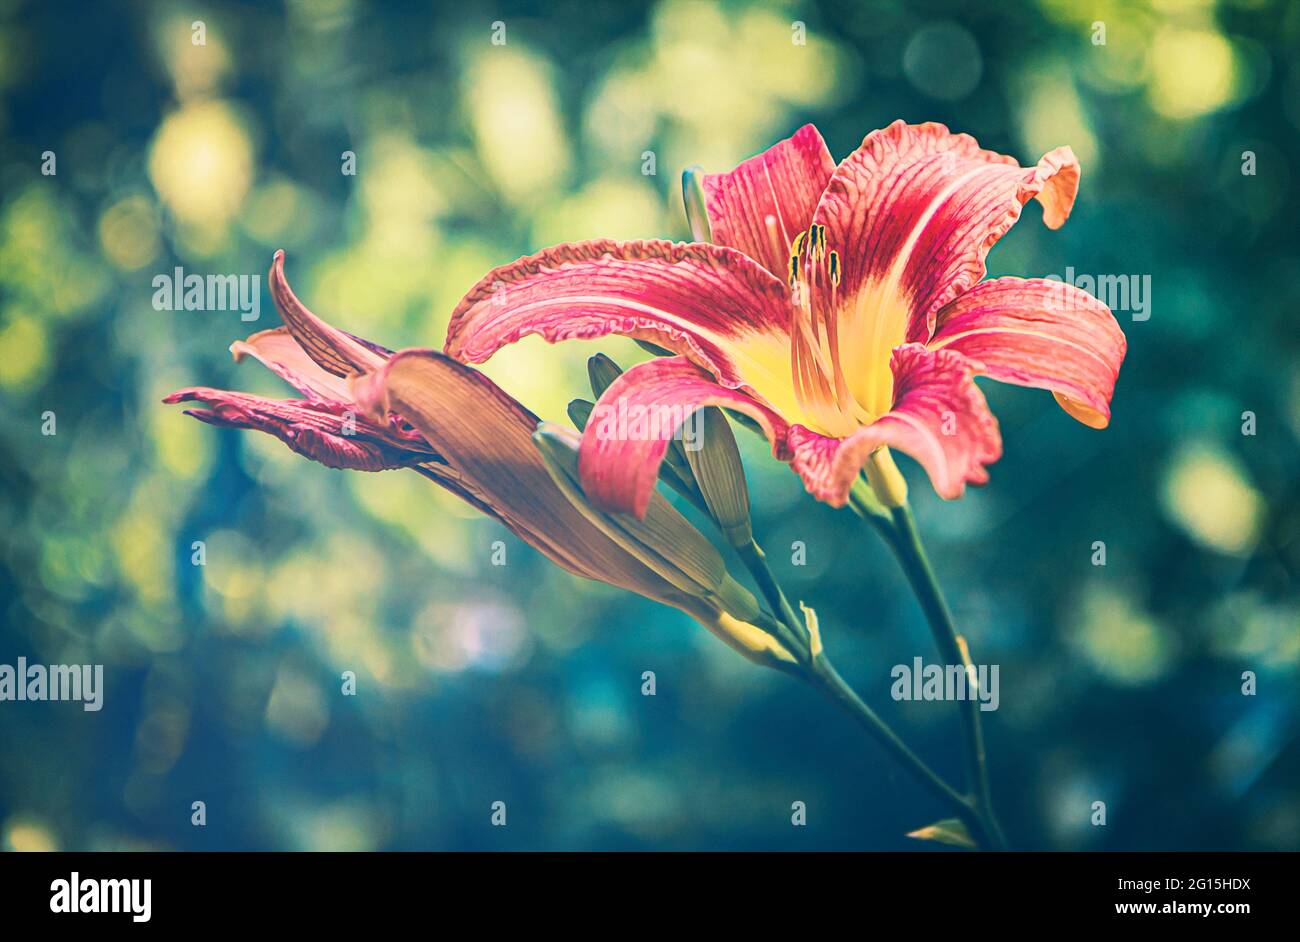 Melancholie im Jenseits. Wunderschöne, rote Taglilien Pflanze und Blume in einem verstecken Garten im Sommer. Diese Pflanze blüht nur an einem Tag. Stock Photo